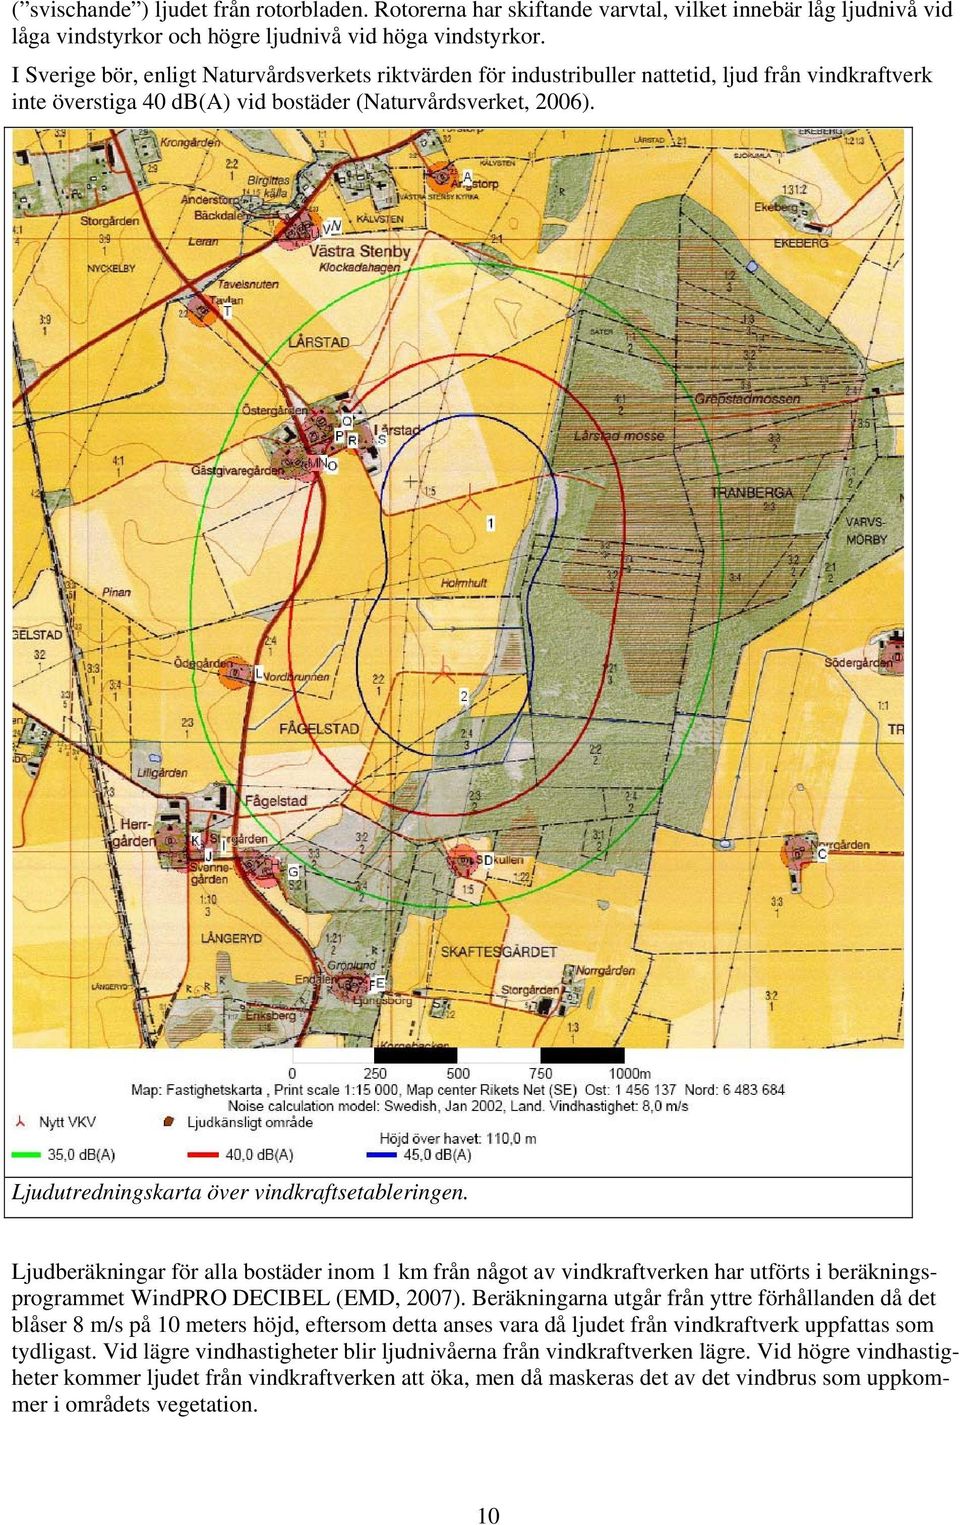 Ljudutredningskarta över vindkraftsetableringen. Ljudberäkningar för alla bostäder inom 1 km från något av vindkraftverken har utförts i beräkningsprogrammet WindPRO DECIBEL (EMD, 2007).